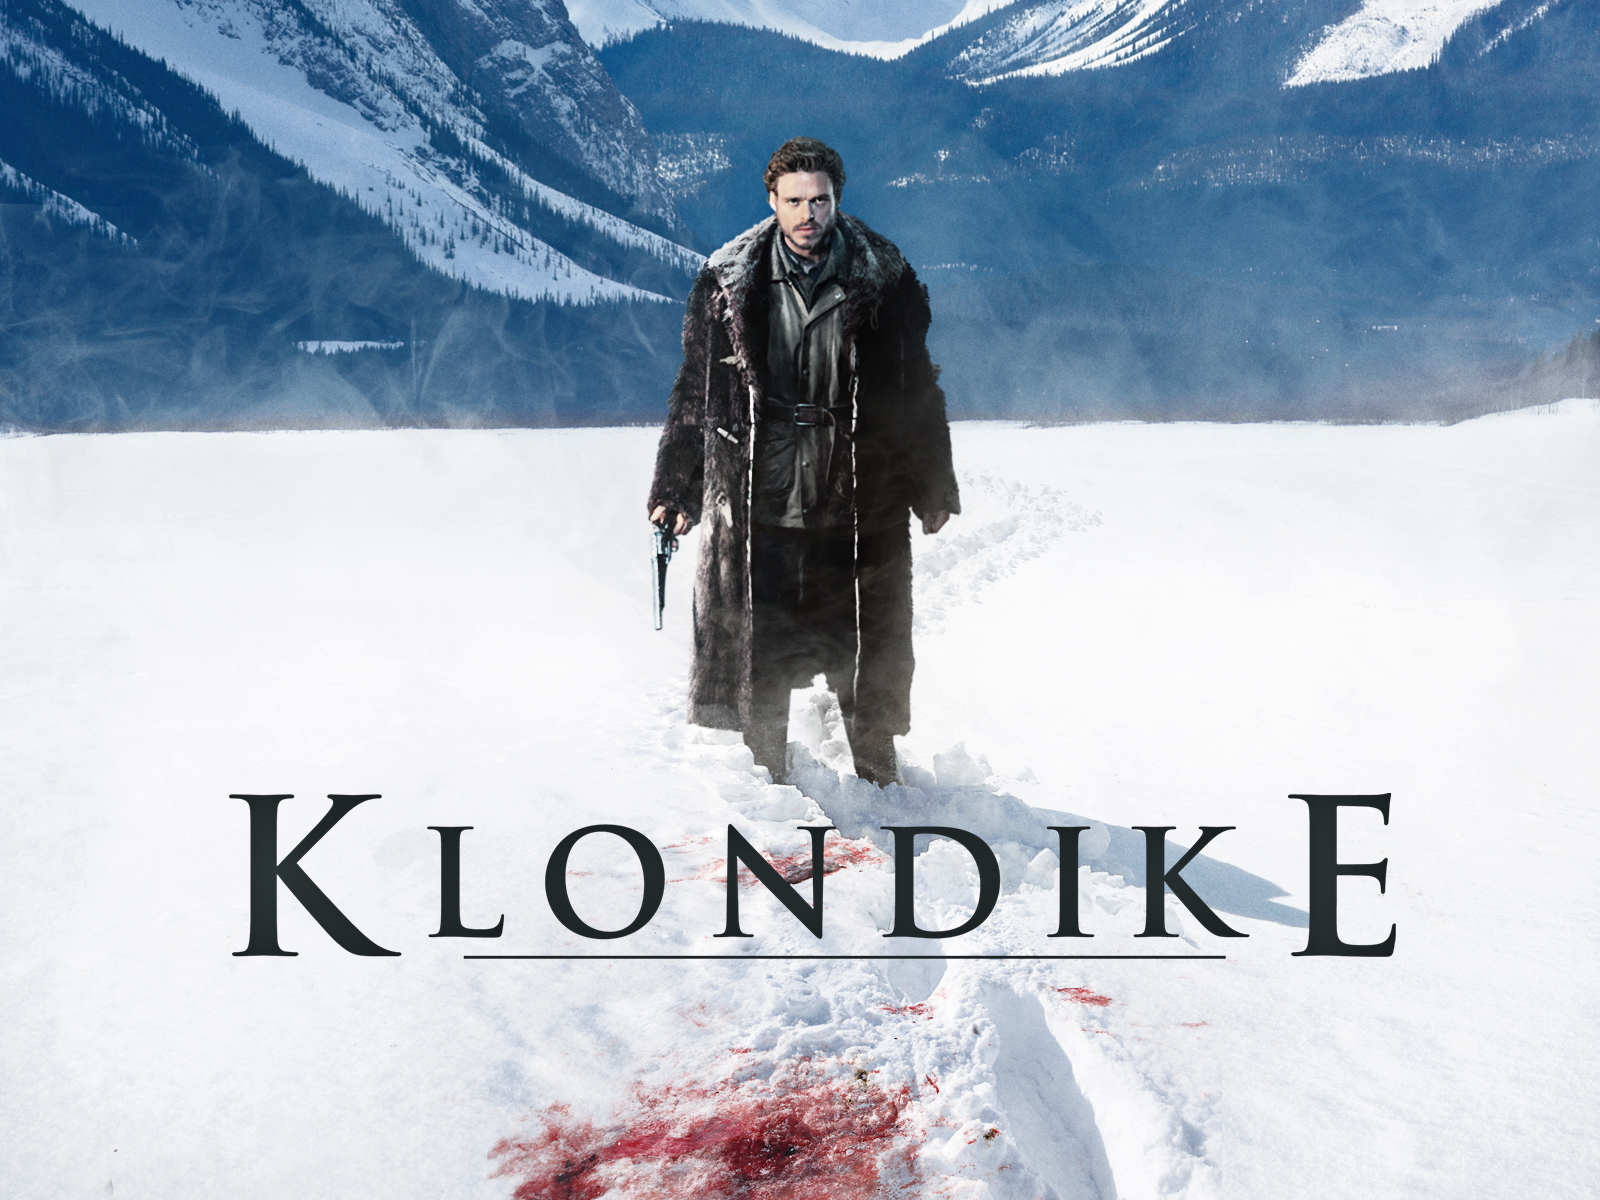 Klondike (2014) Wallpapers